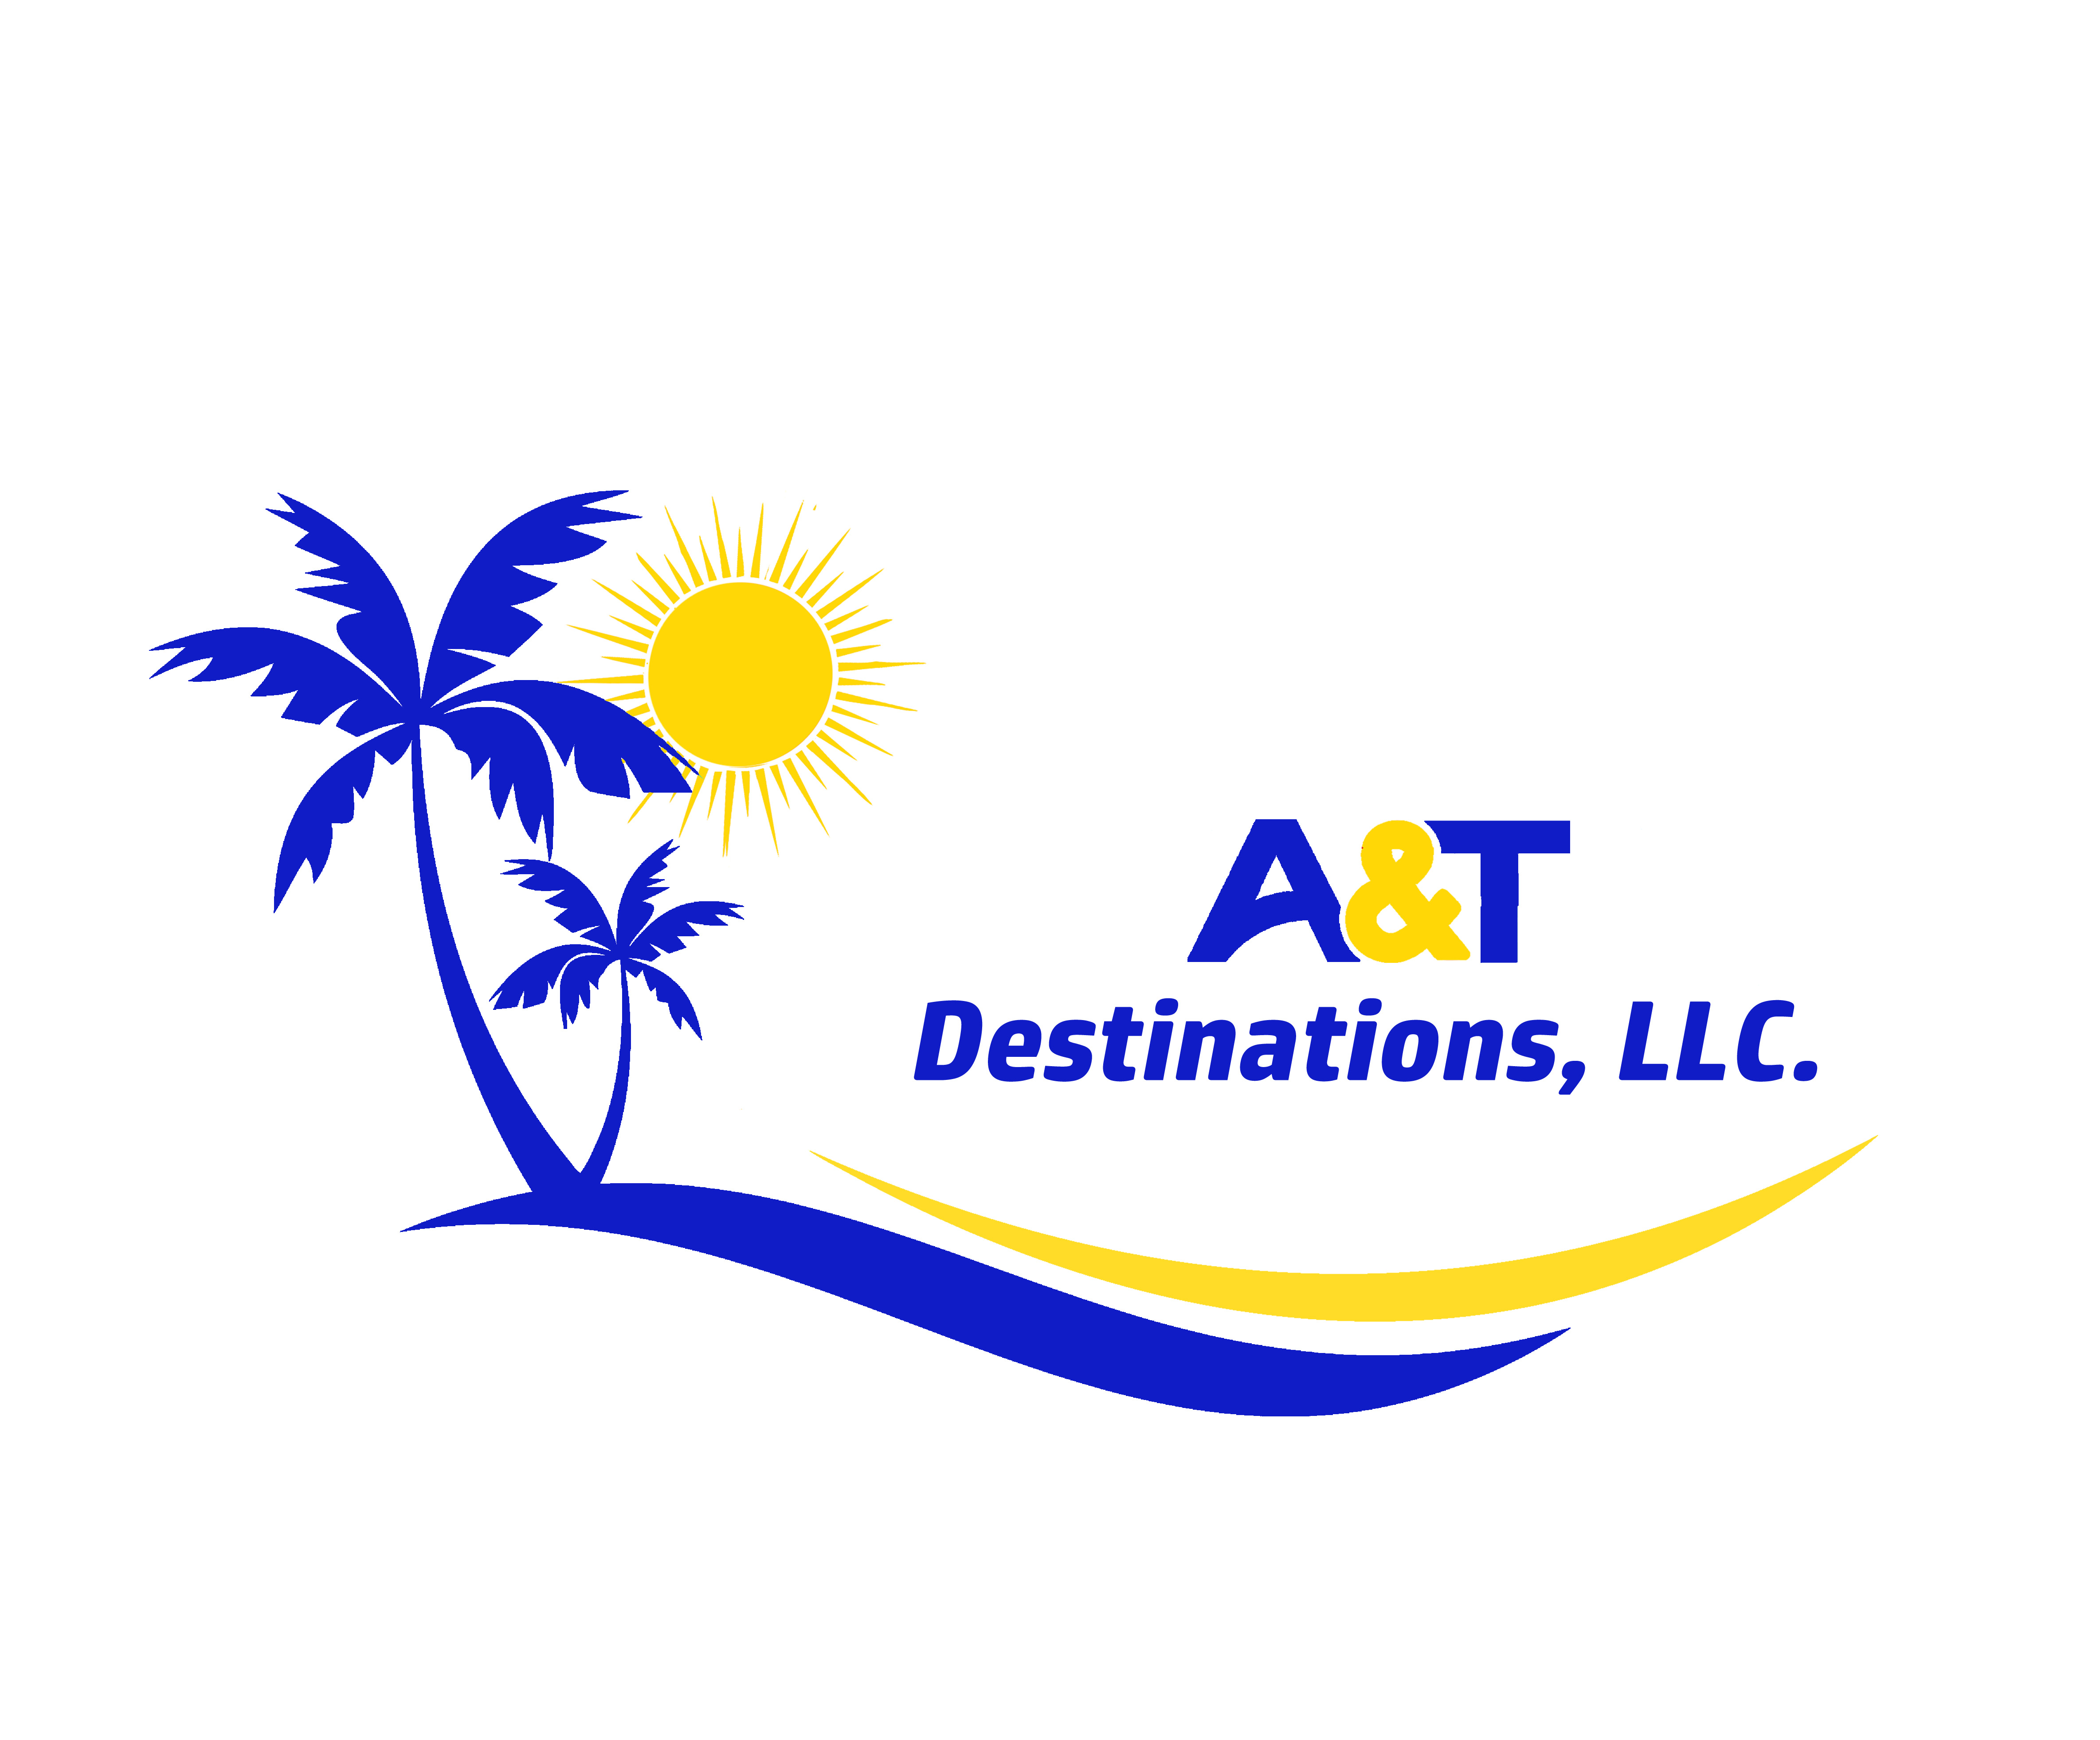 A&T Destinations, LLC